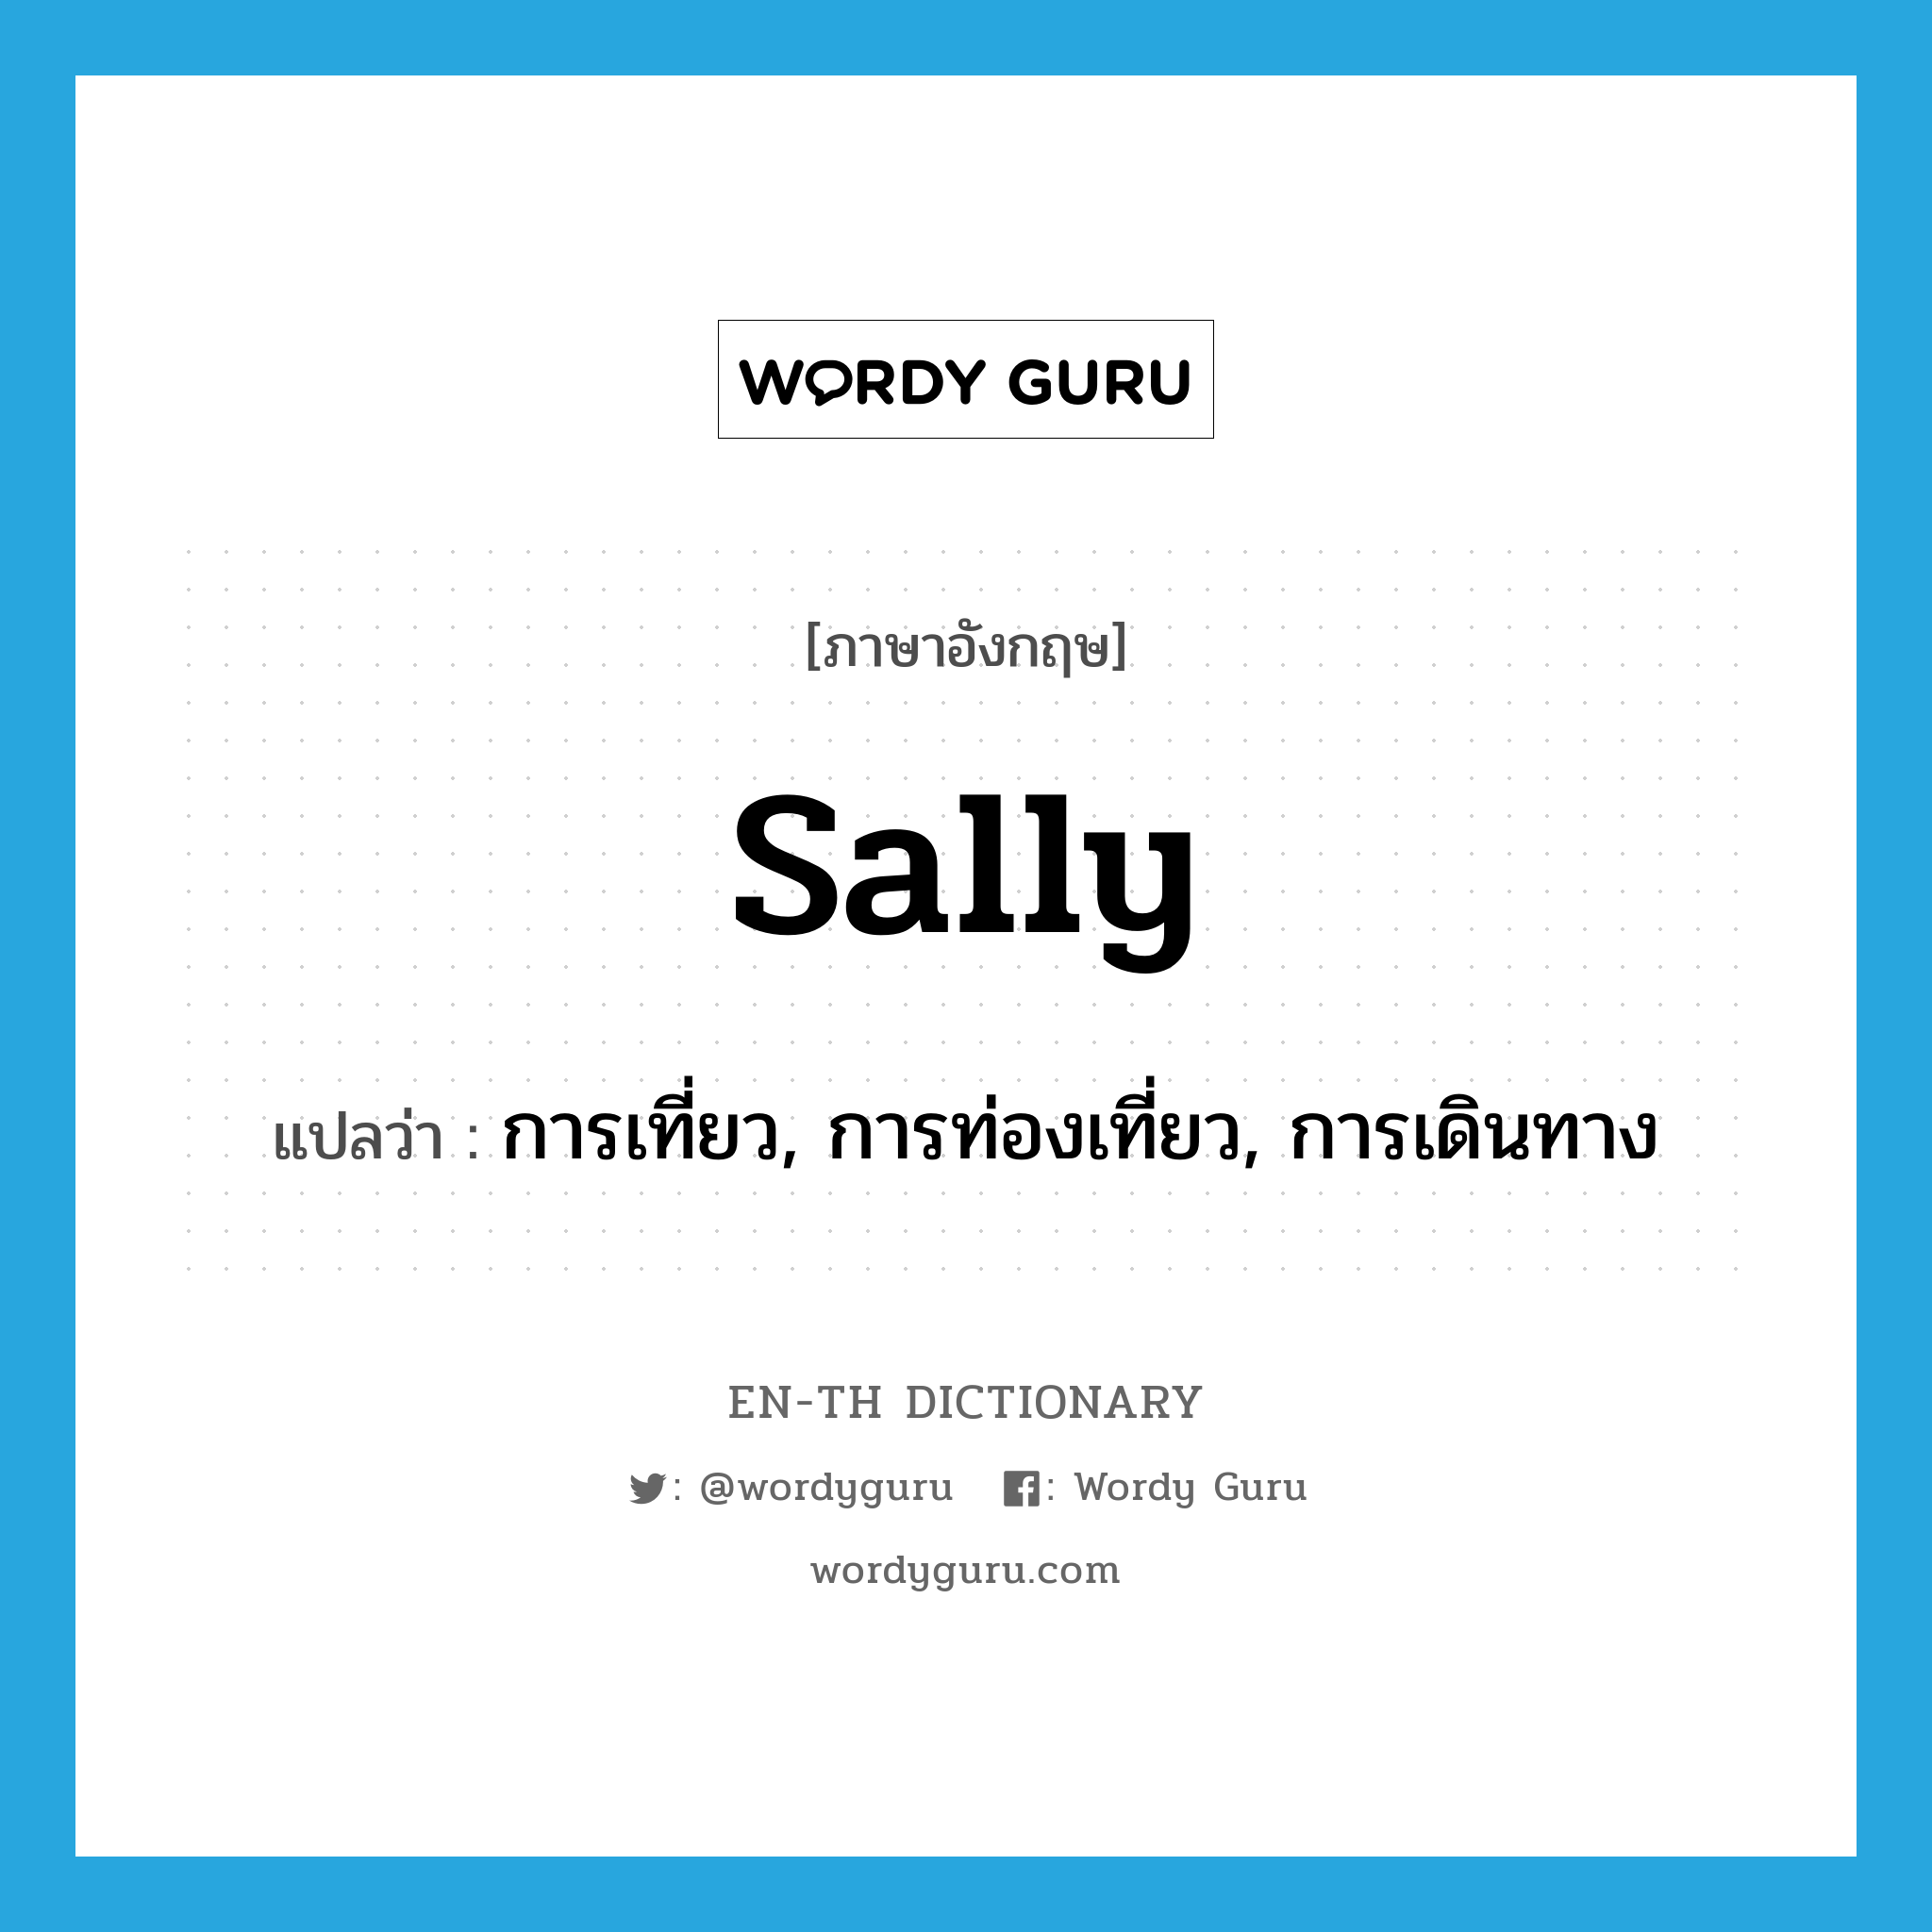 sally แปลว่า?, คำศัพท์ภาษาอังกฤษ sally แปลว่า การเที่ยว, การท่องเที่ยว, การเดินทาง ประเภท N หมวด N